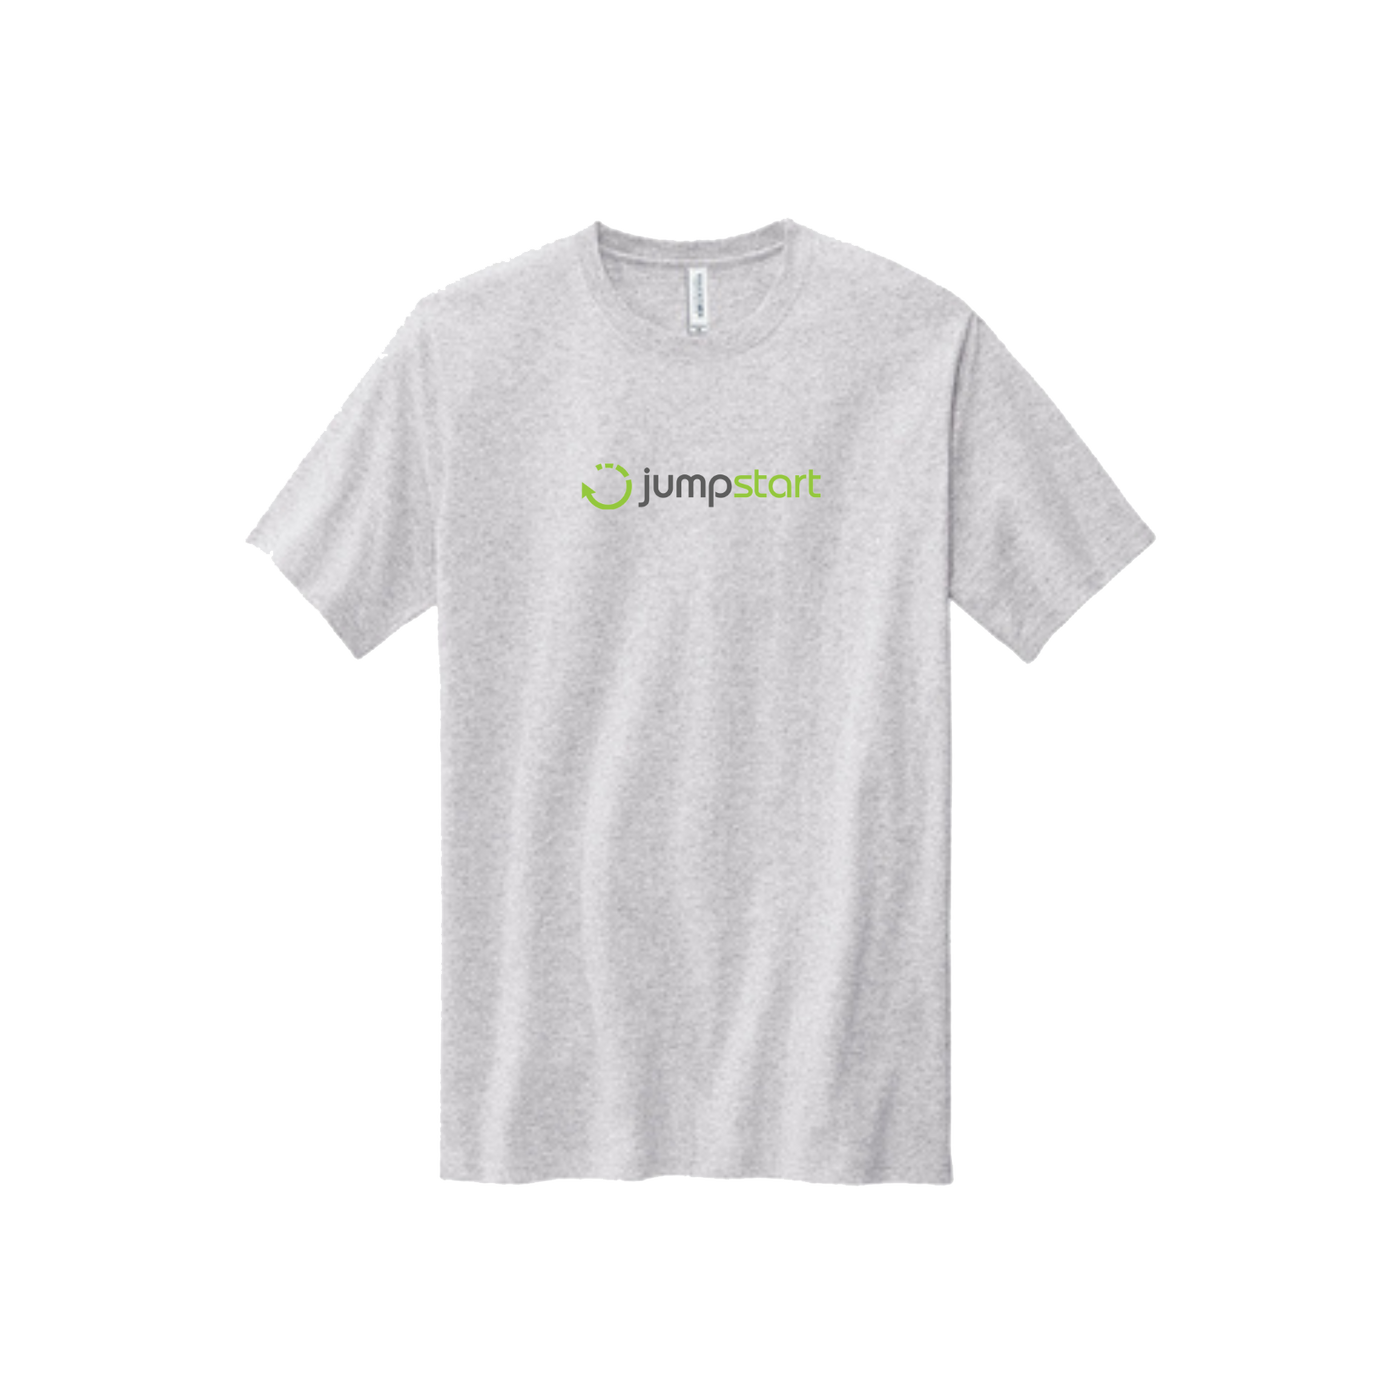 GM Jumpstart ERG USA Made T-Shirt